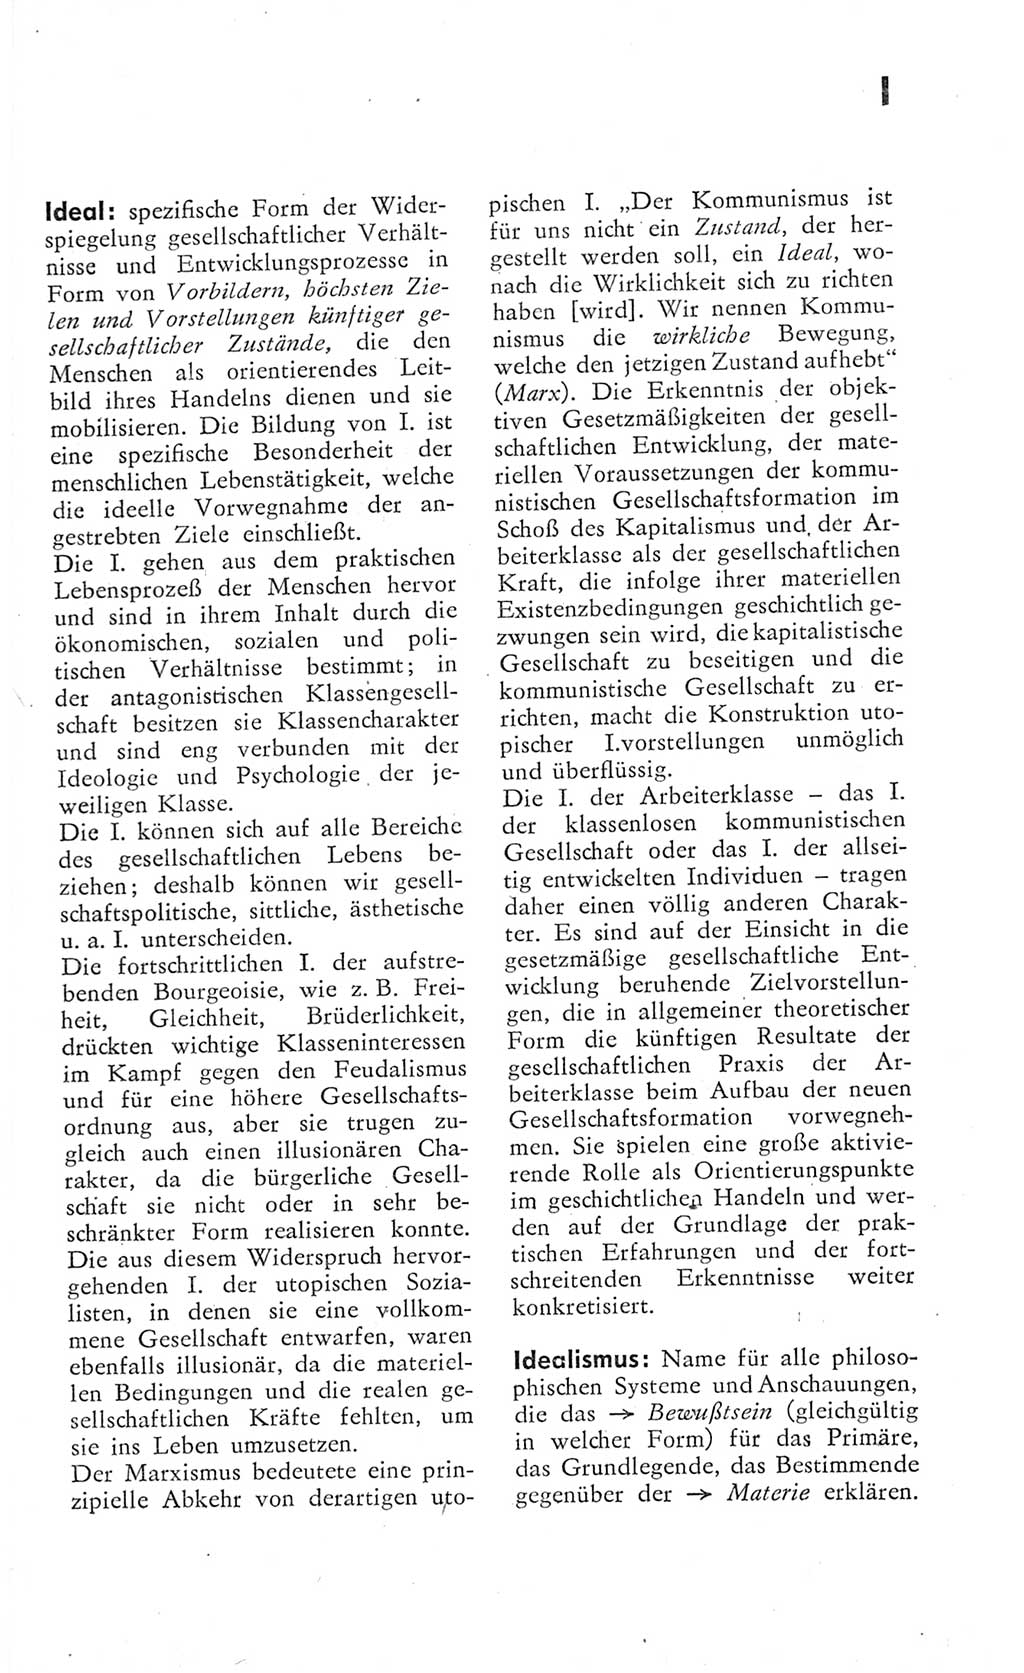 Kleines Wörterbuch der marxistisch-leninistischen Philosophie [Deutsche Demokratische Republik (DDR)] 1975, Seite 135 (Kl. Wb. ML Phil. DDR 1975, S. 135)